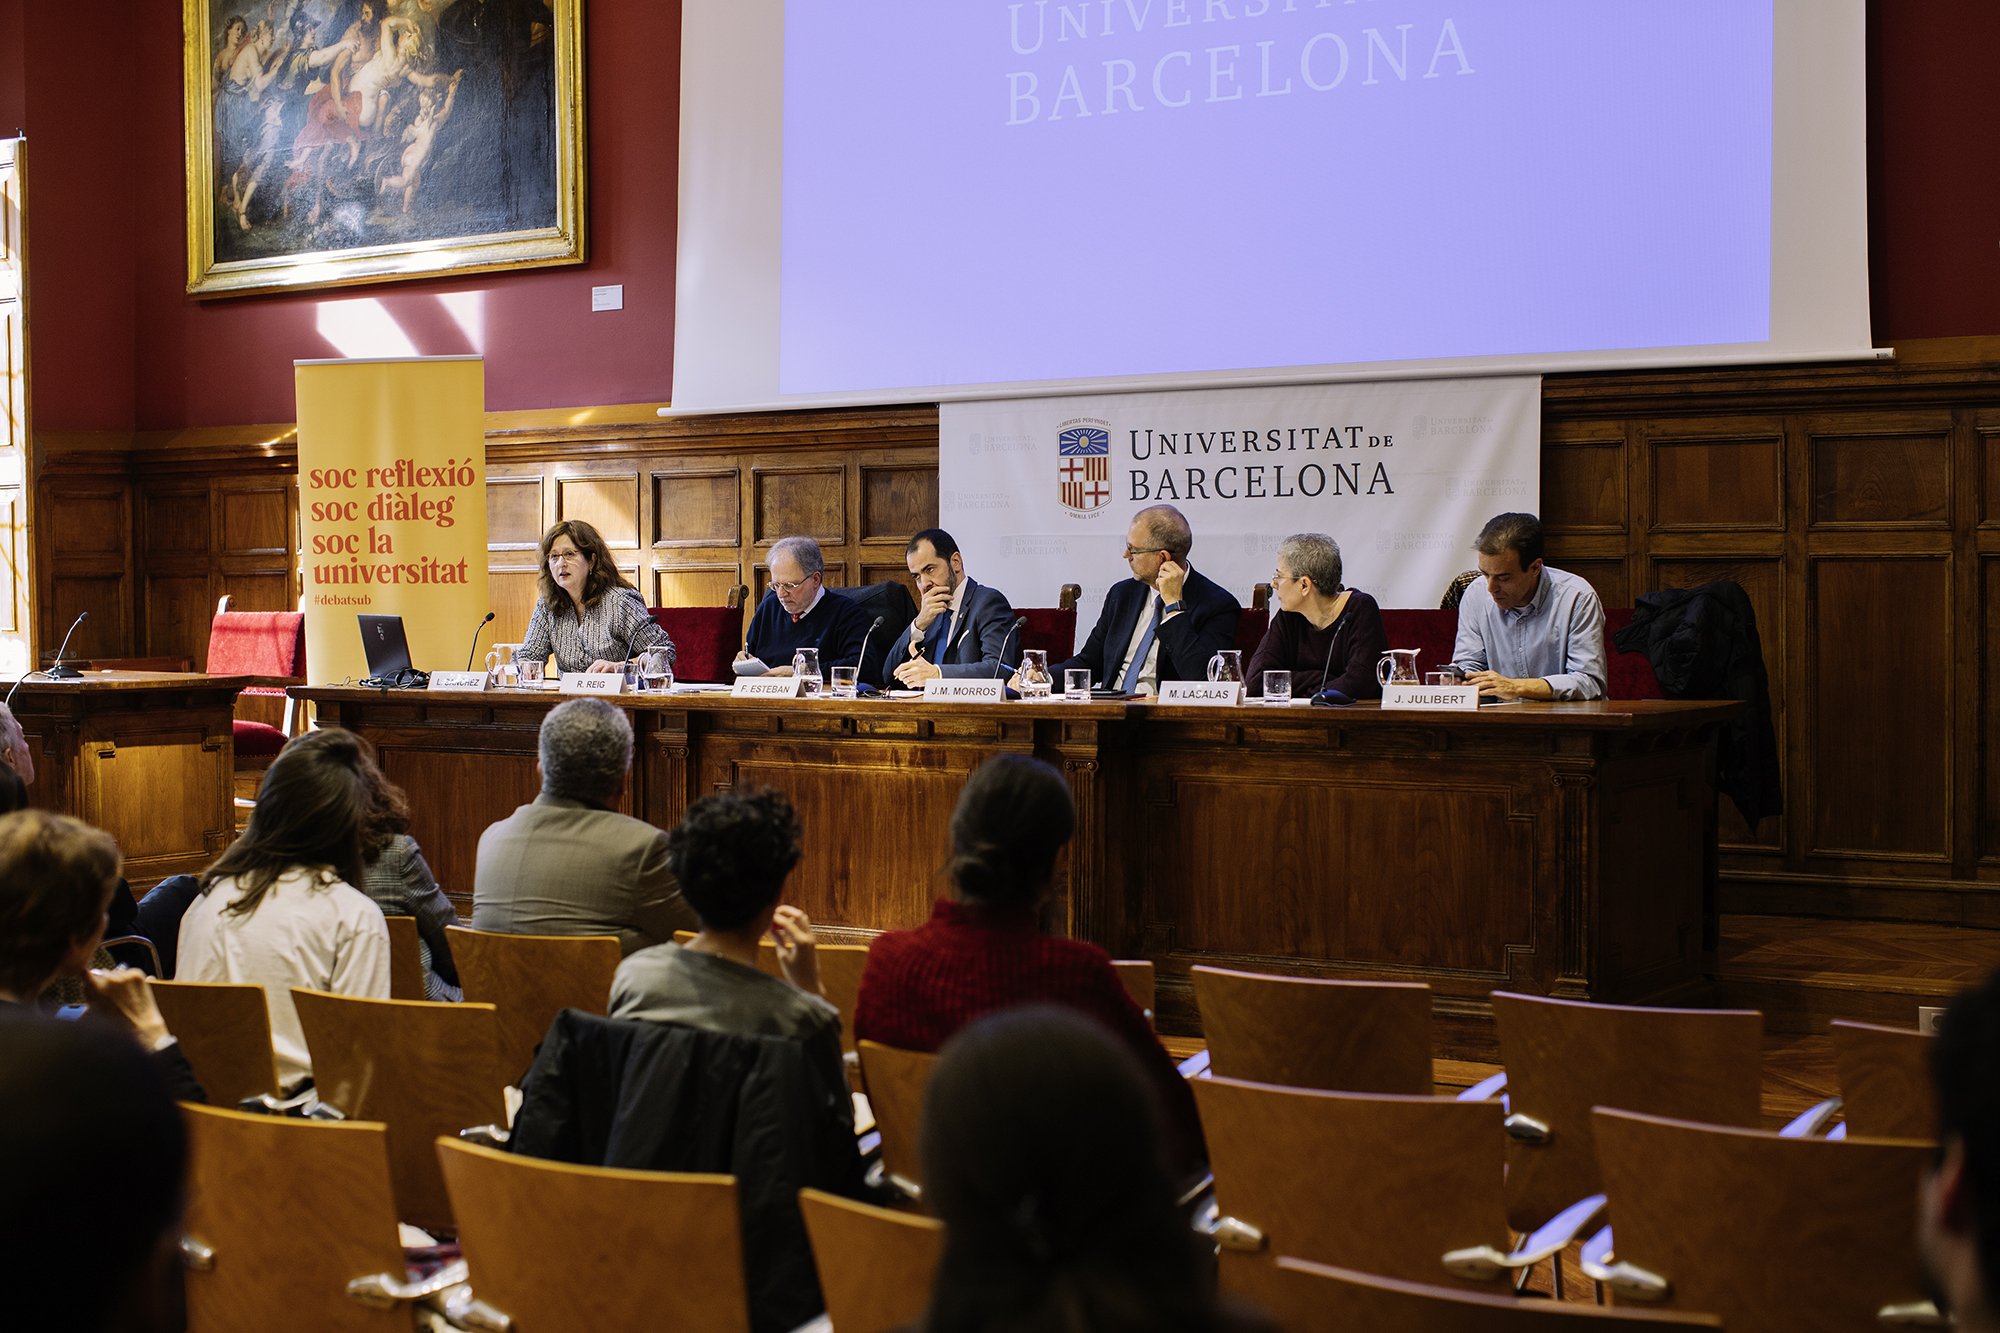 ¿Cómo informar sobre la relación Catalunya-Espanya?: un debate incómodo en la UB